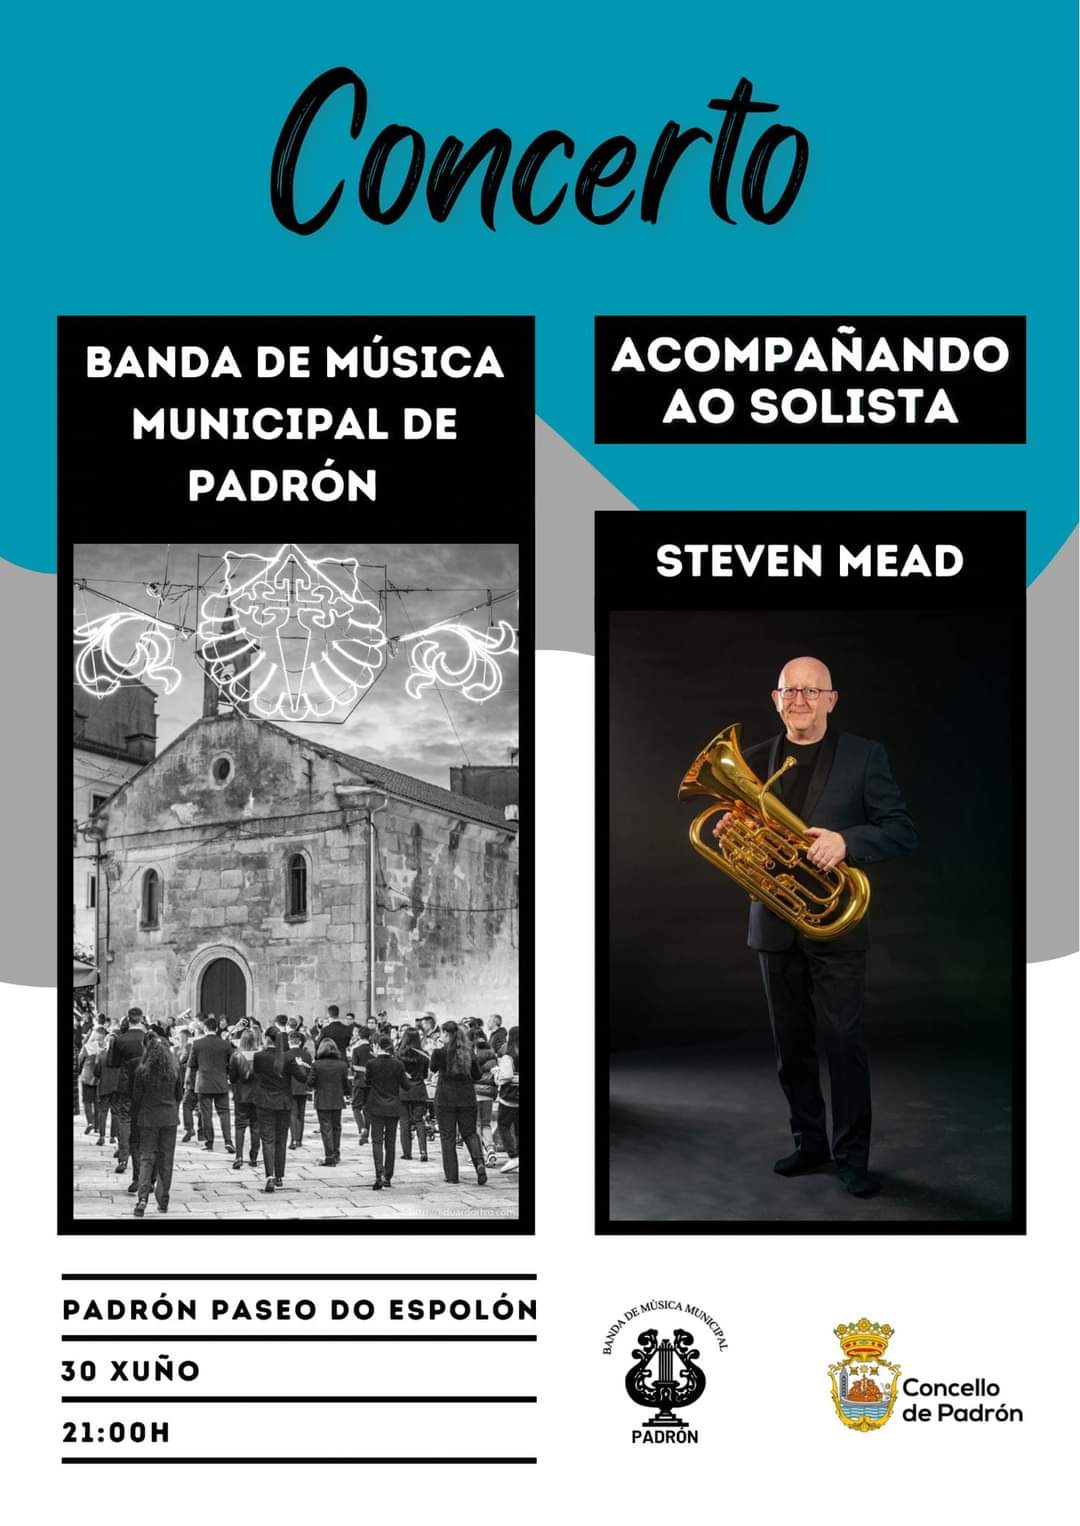 Concerto da Banda de Música municipal de Padrón acompañando ao solista Steven Mead